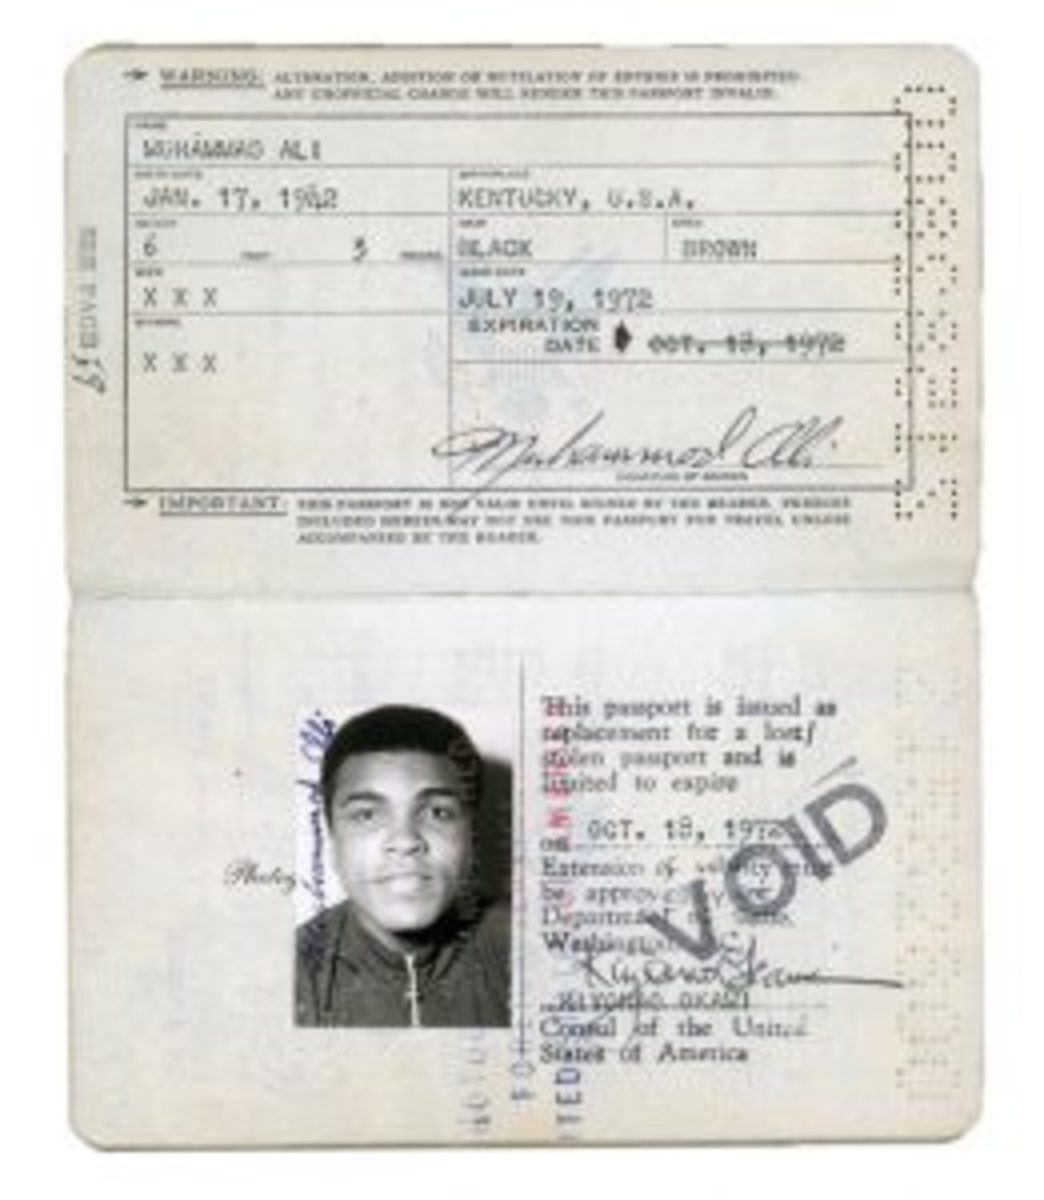 Ali's passport